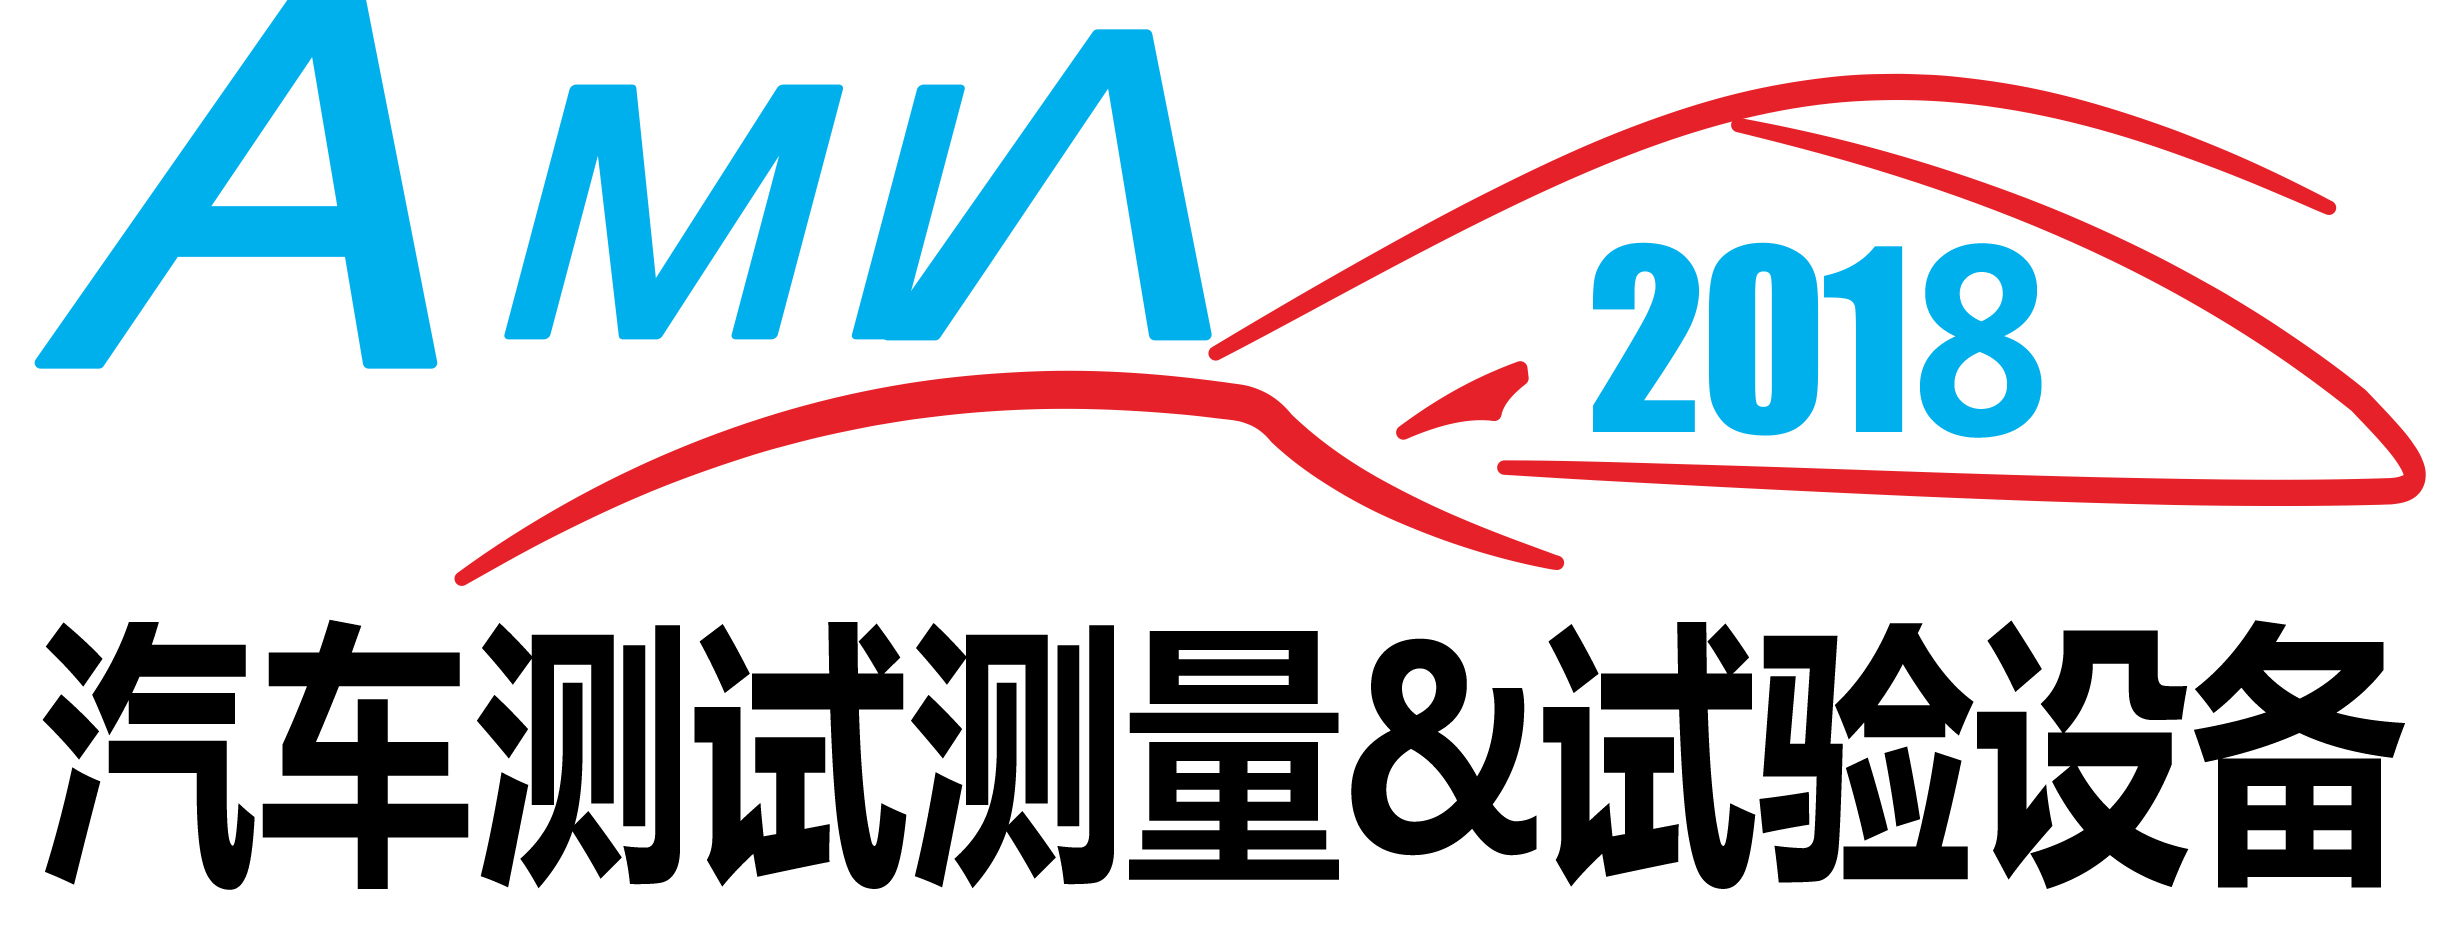 2018武漢汽車測試測量與試驗設備博覽會